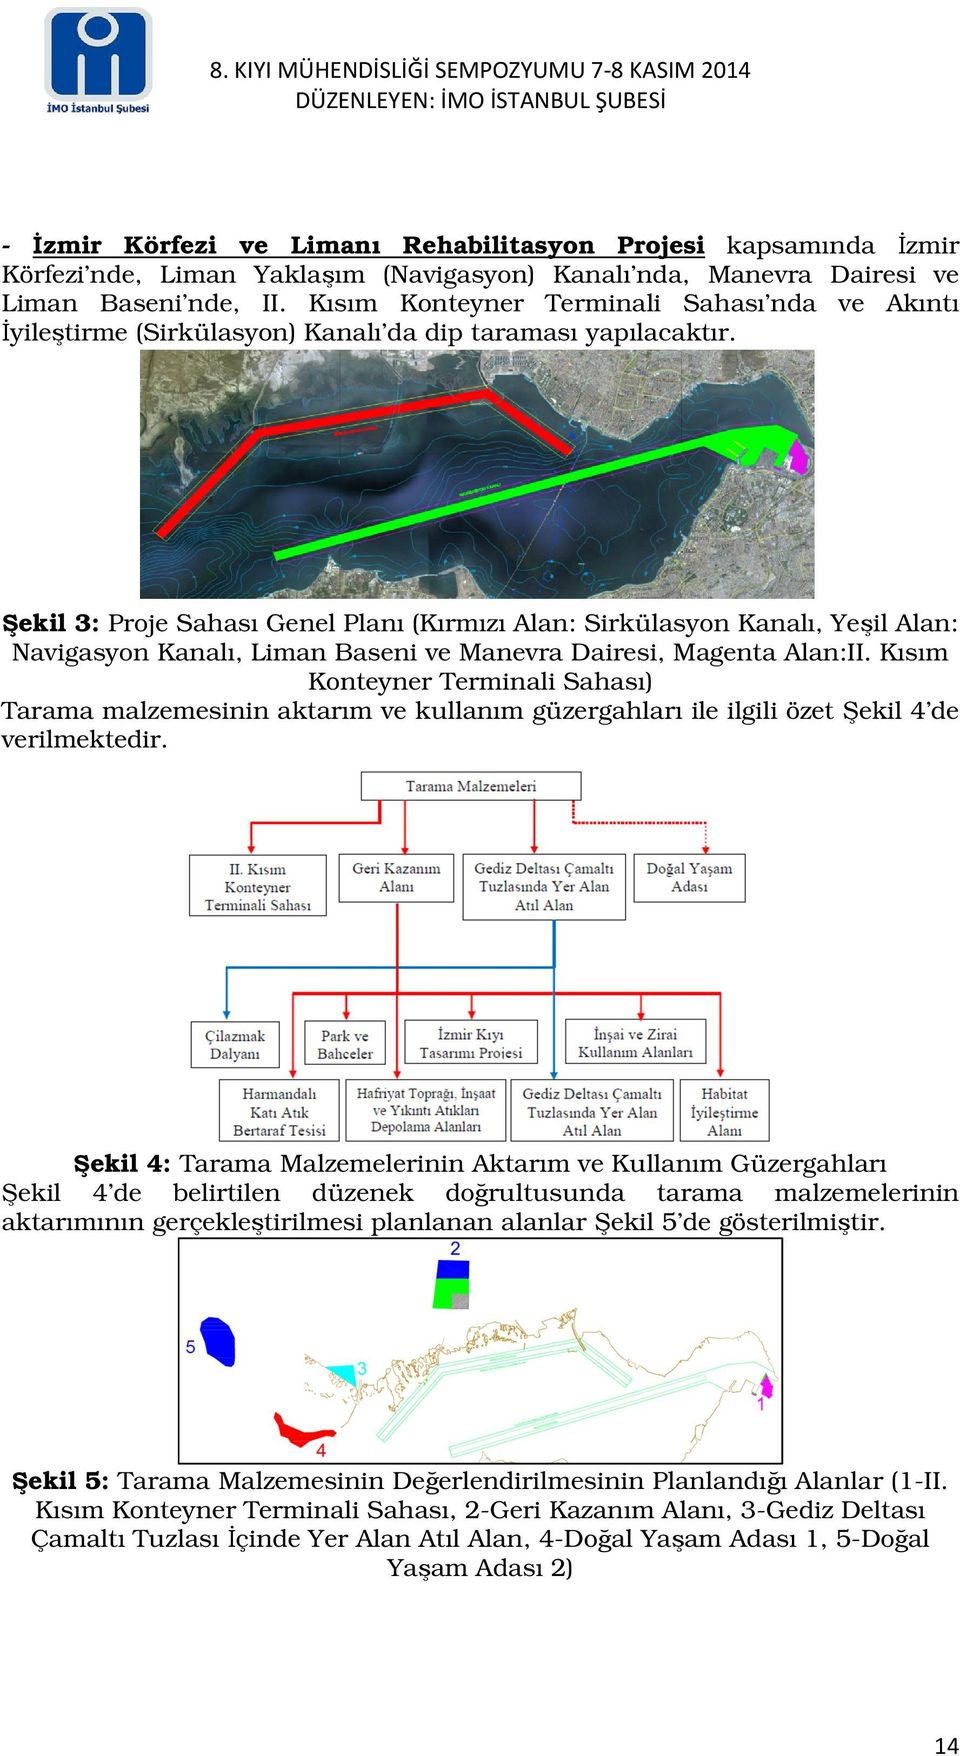 Şekil 3: Proje Sahası Genel Planı (Kırmızı Alan: Sirkülasyon Kanalı, Yeşil Alan: Navigasyon Kanalı, Liman Baseni ve Manevra Dairesi, Magenta Alan:II.